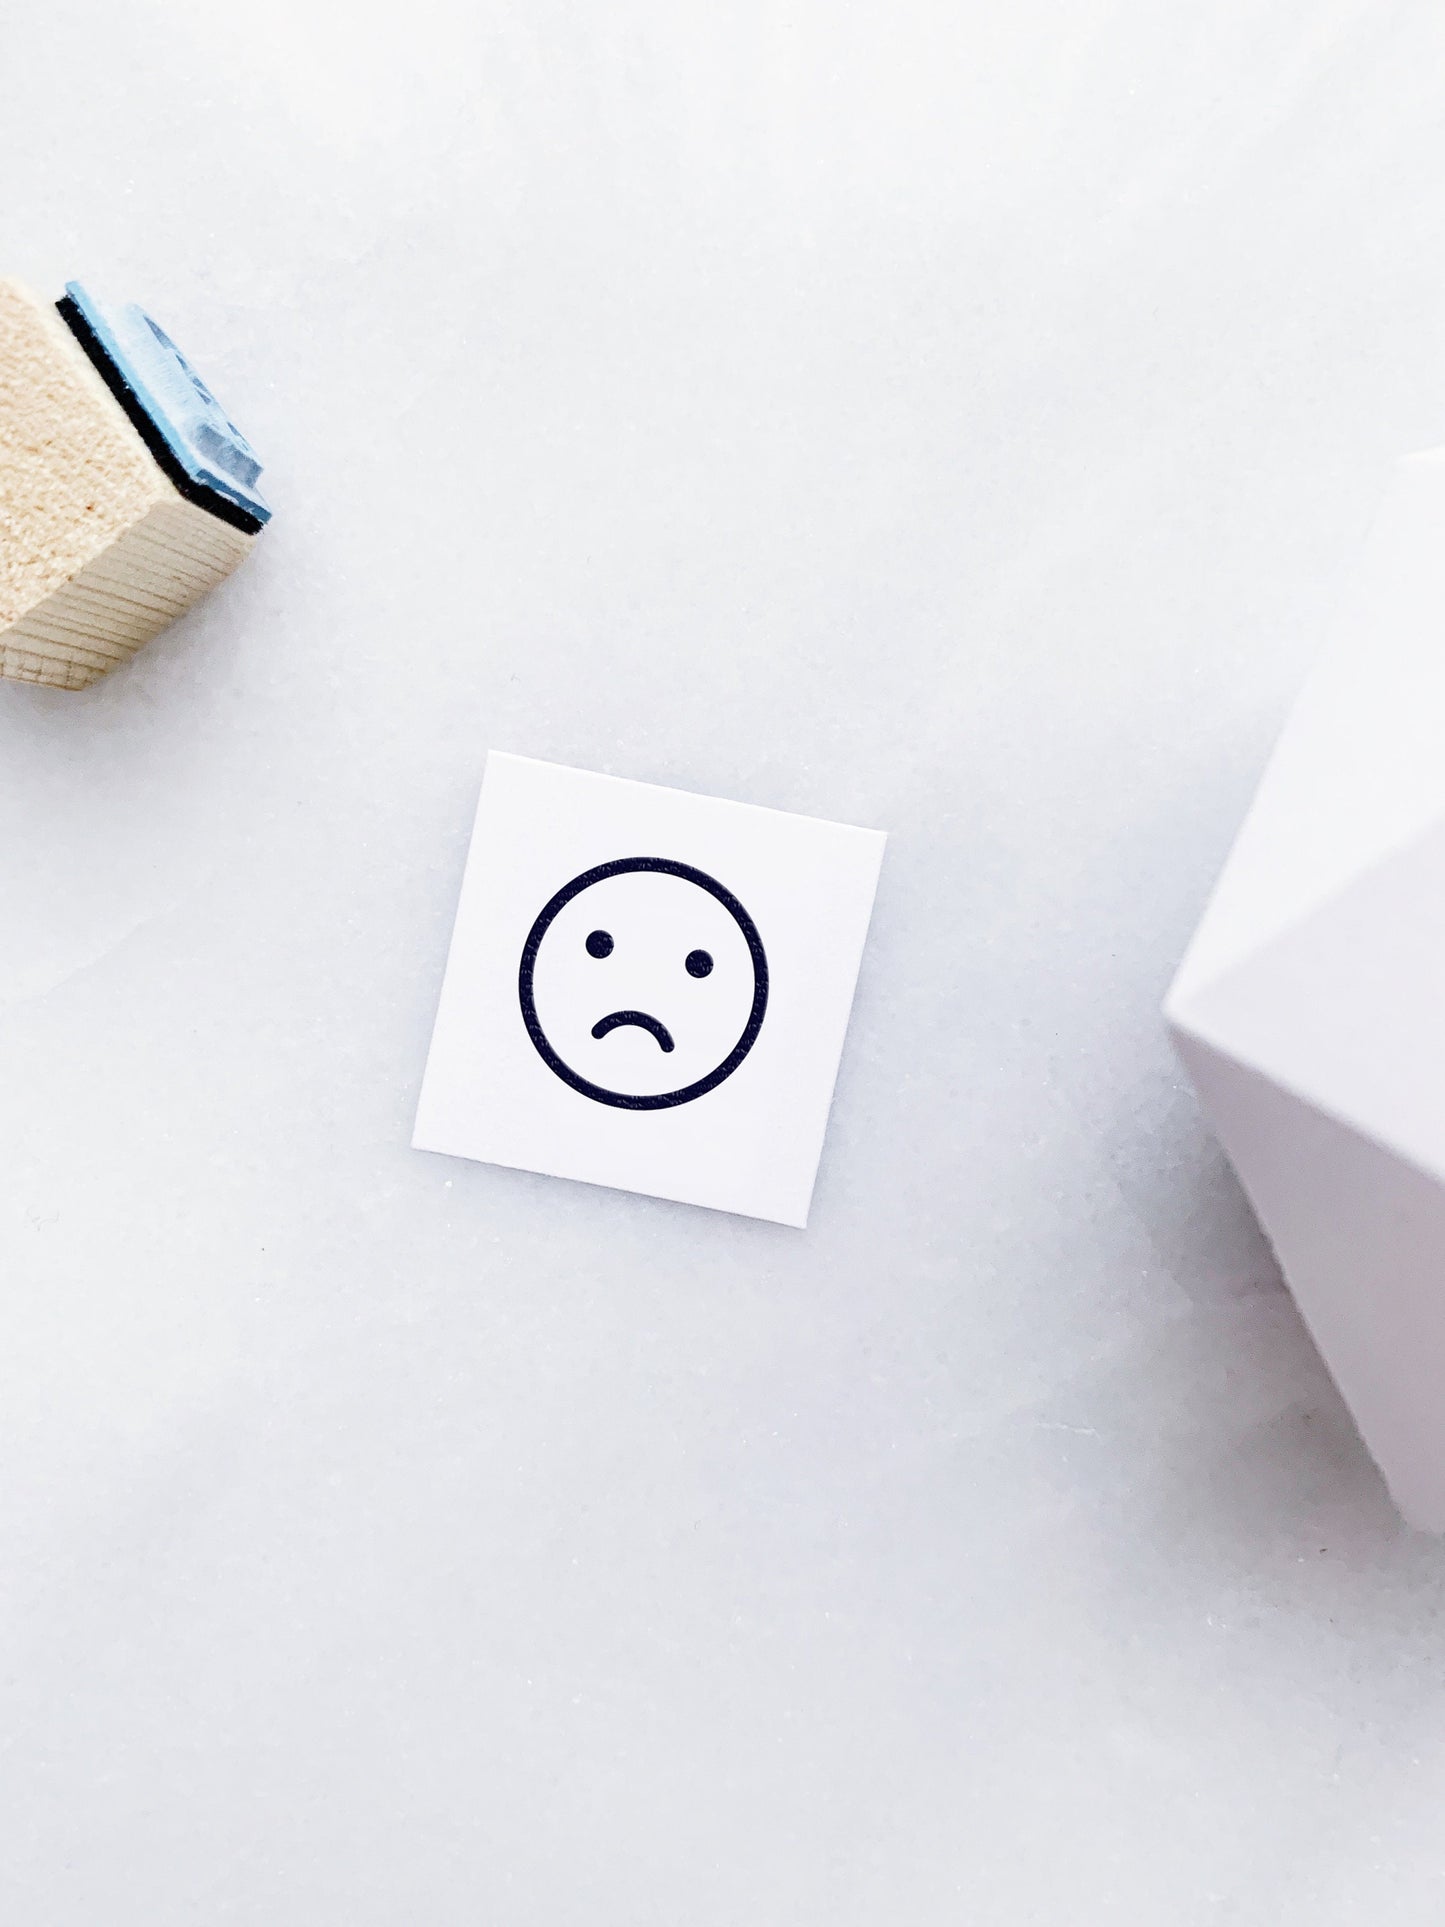 Mood and Emoji Rubber Stamp Set